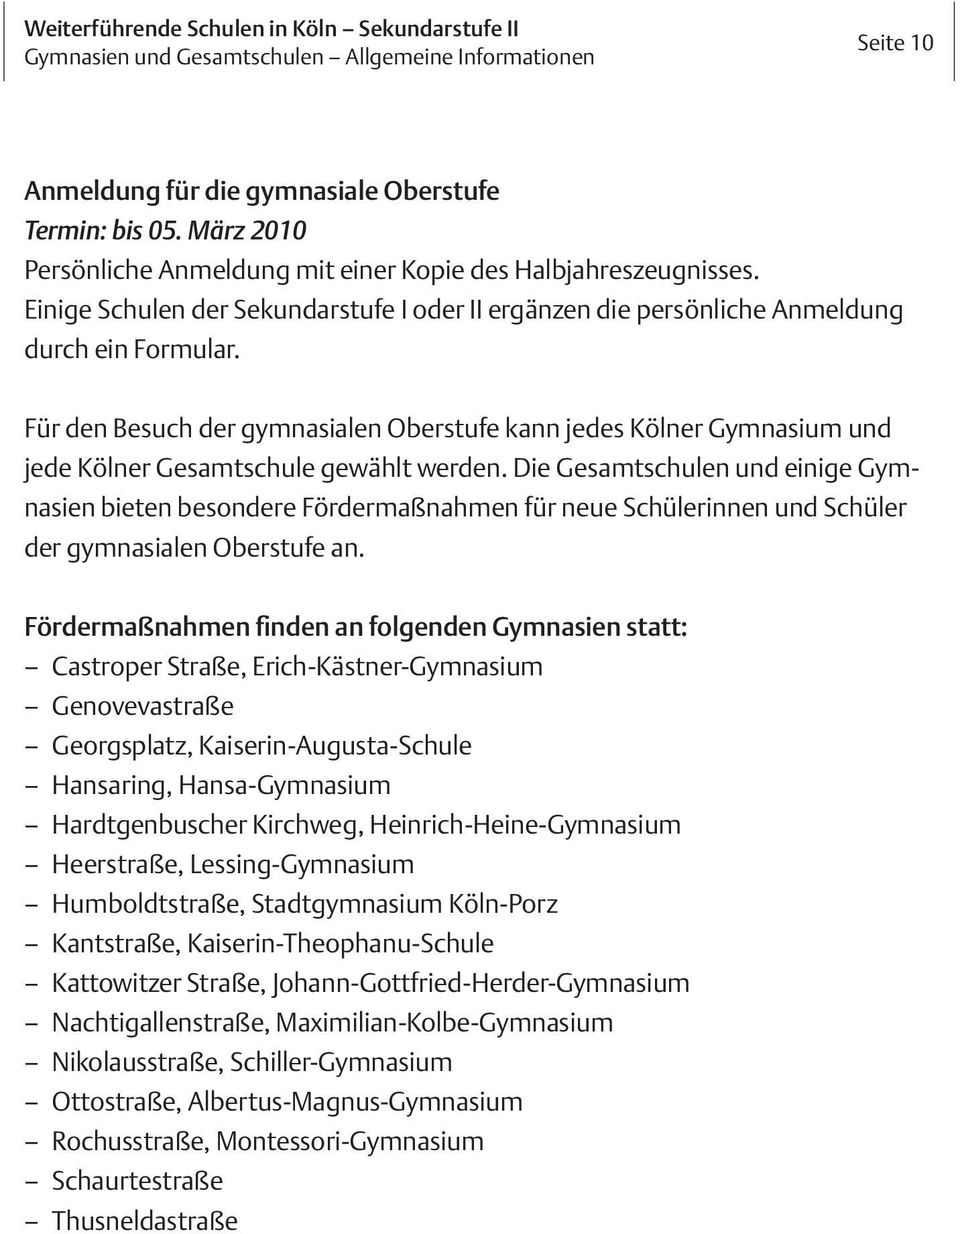 Für den Besuch der gymnasialen Oberstufe kann jedes Kölner Gymnasium und jede Kölner Gesamtschule gewählt werden.